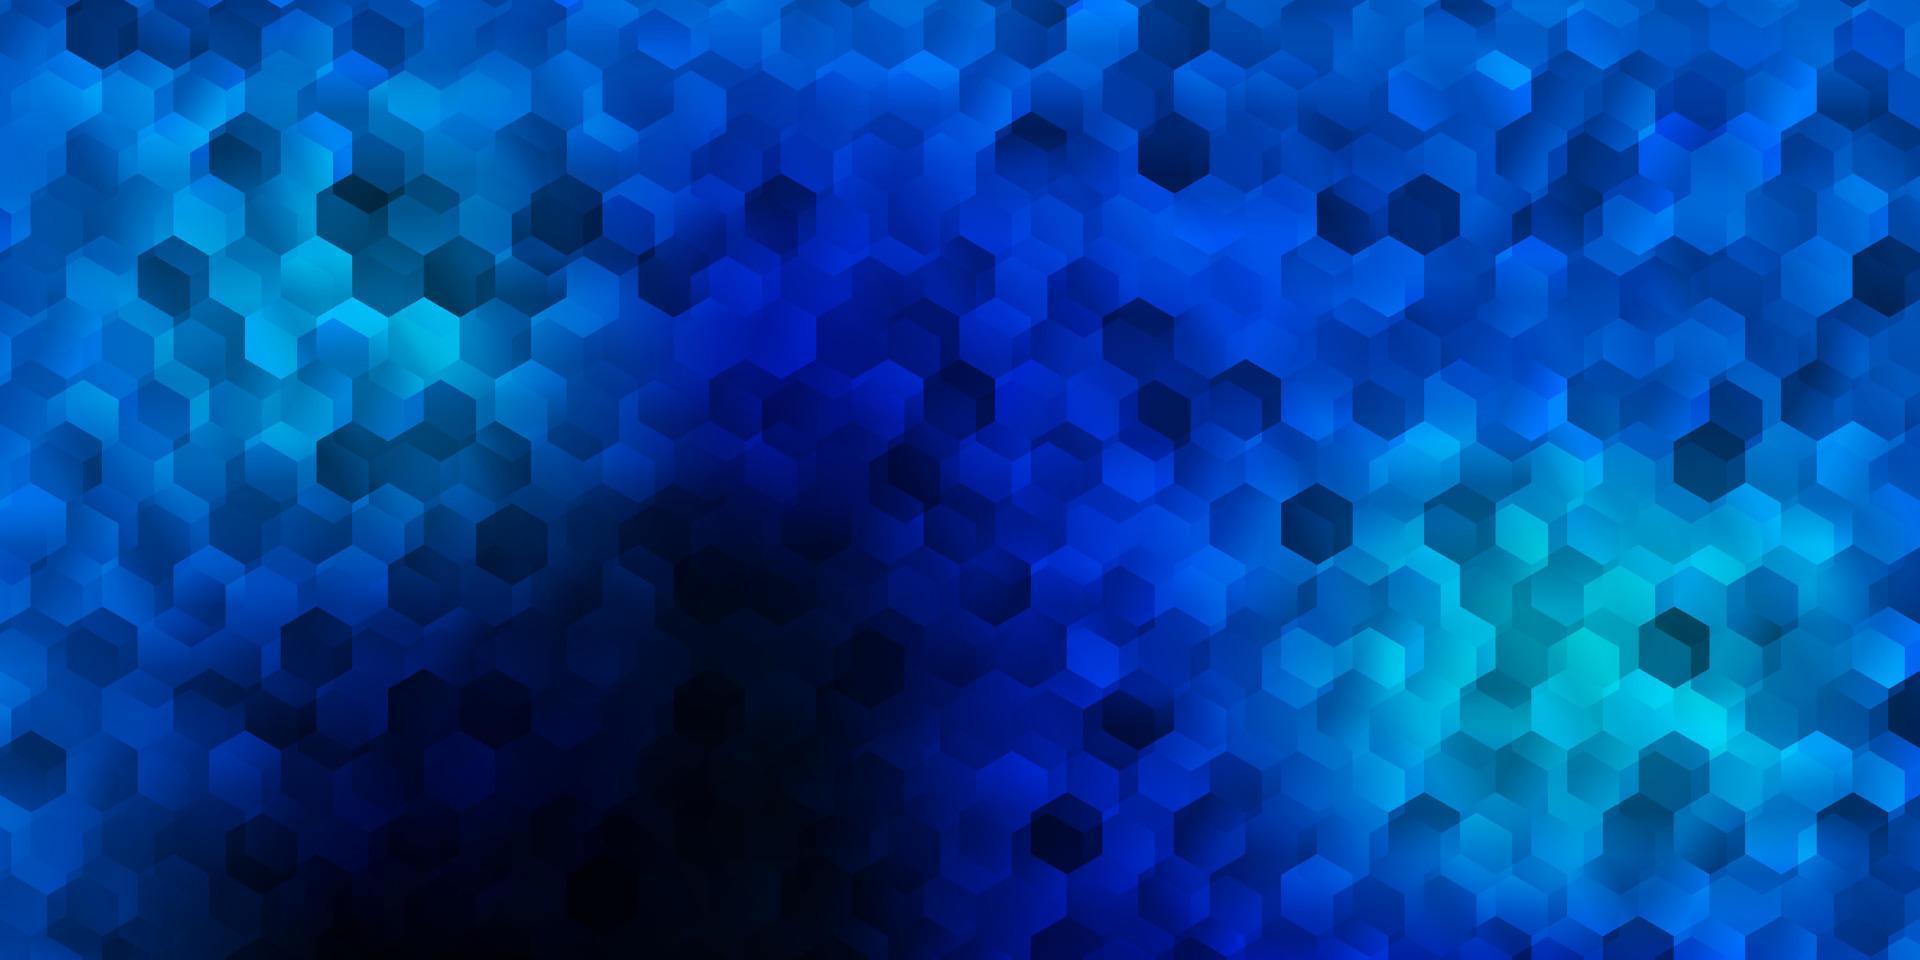 textura de vector azul oscuro con hexágonos de colores.